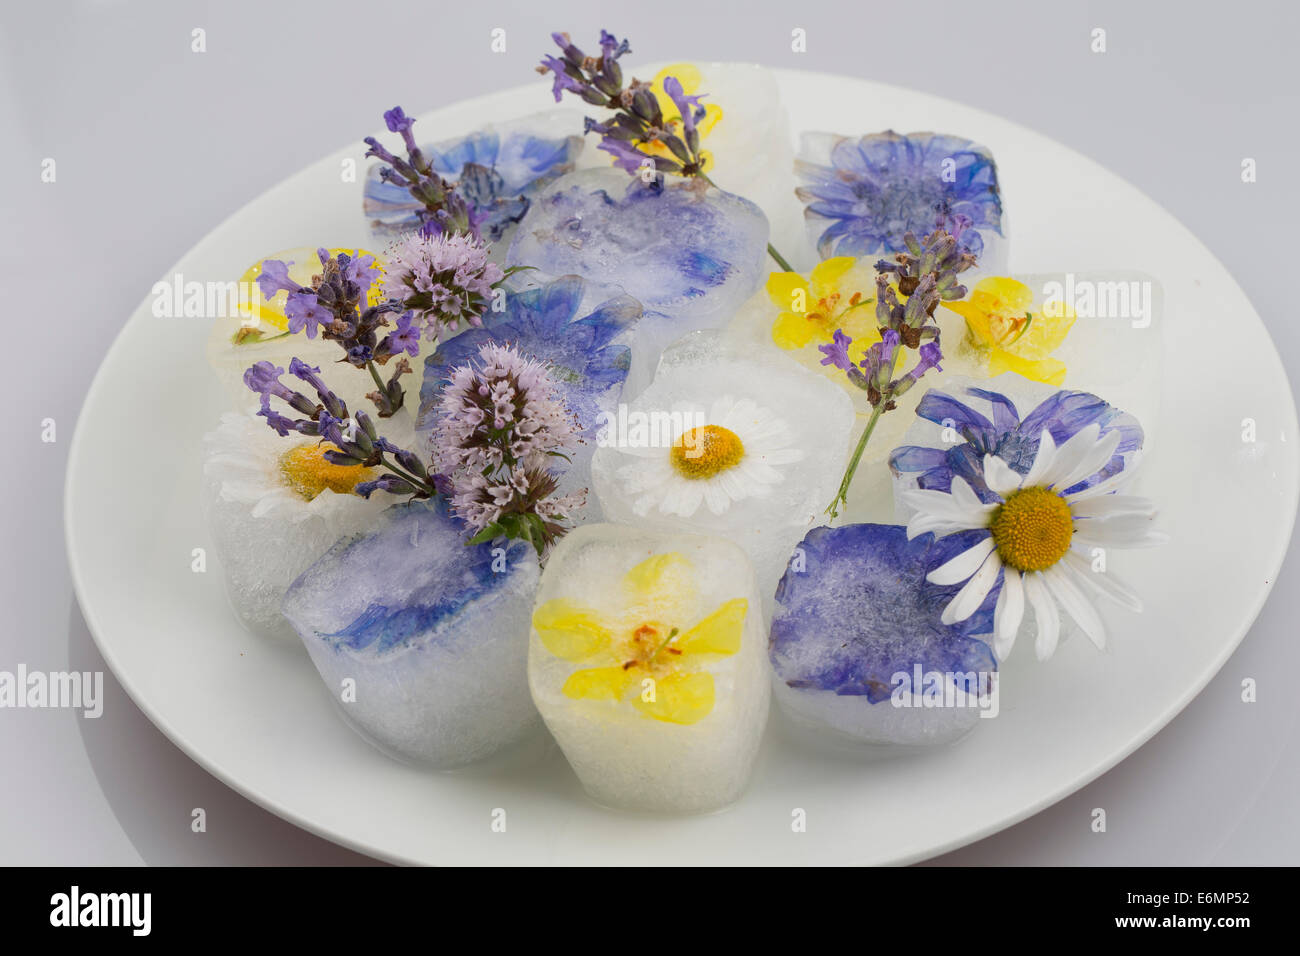 ice cube, ice cubes with edible flowers, blossoms, Blüteneiswürfel, Blüten-Eiswürfel, Eiswürfel mit Blüten, Blütenblättern Stock Photo